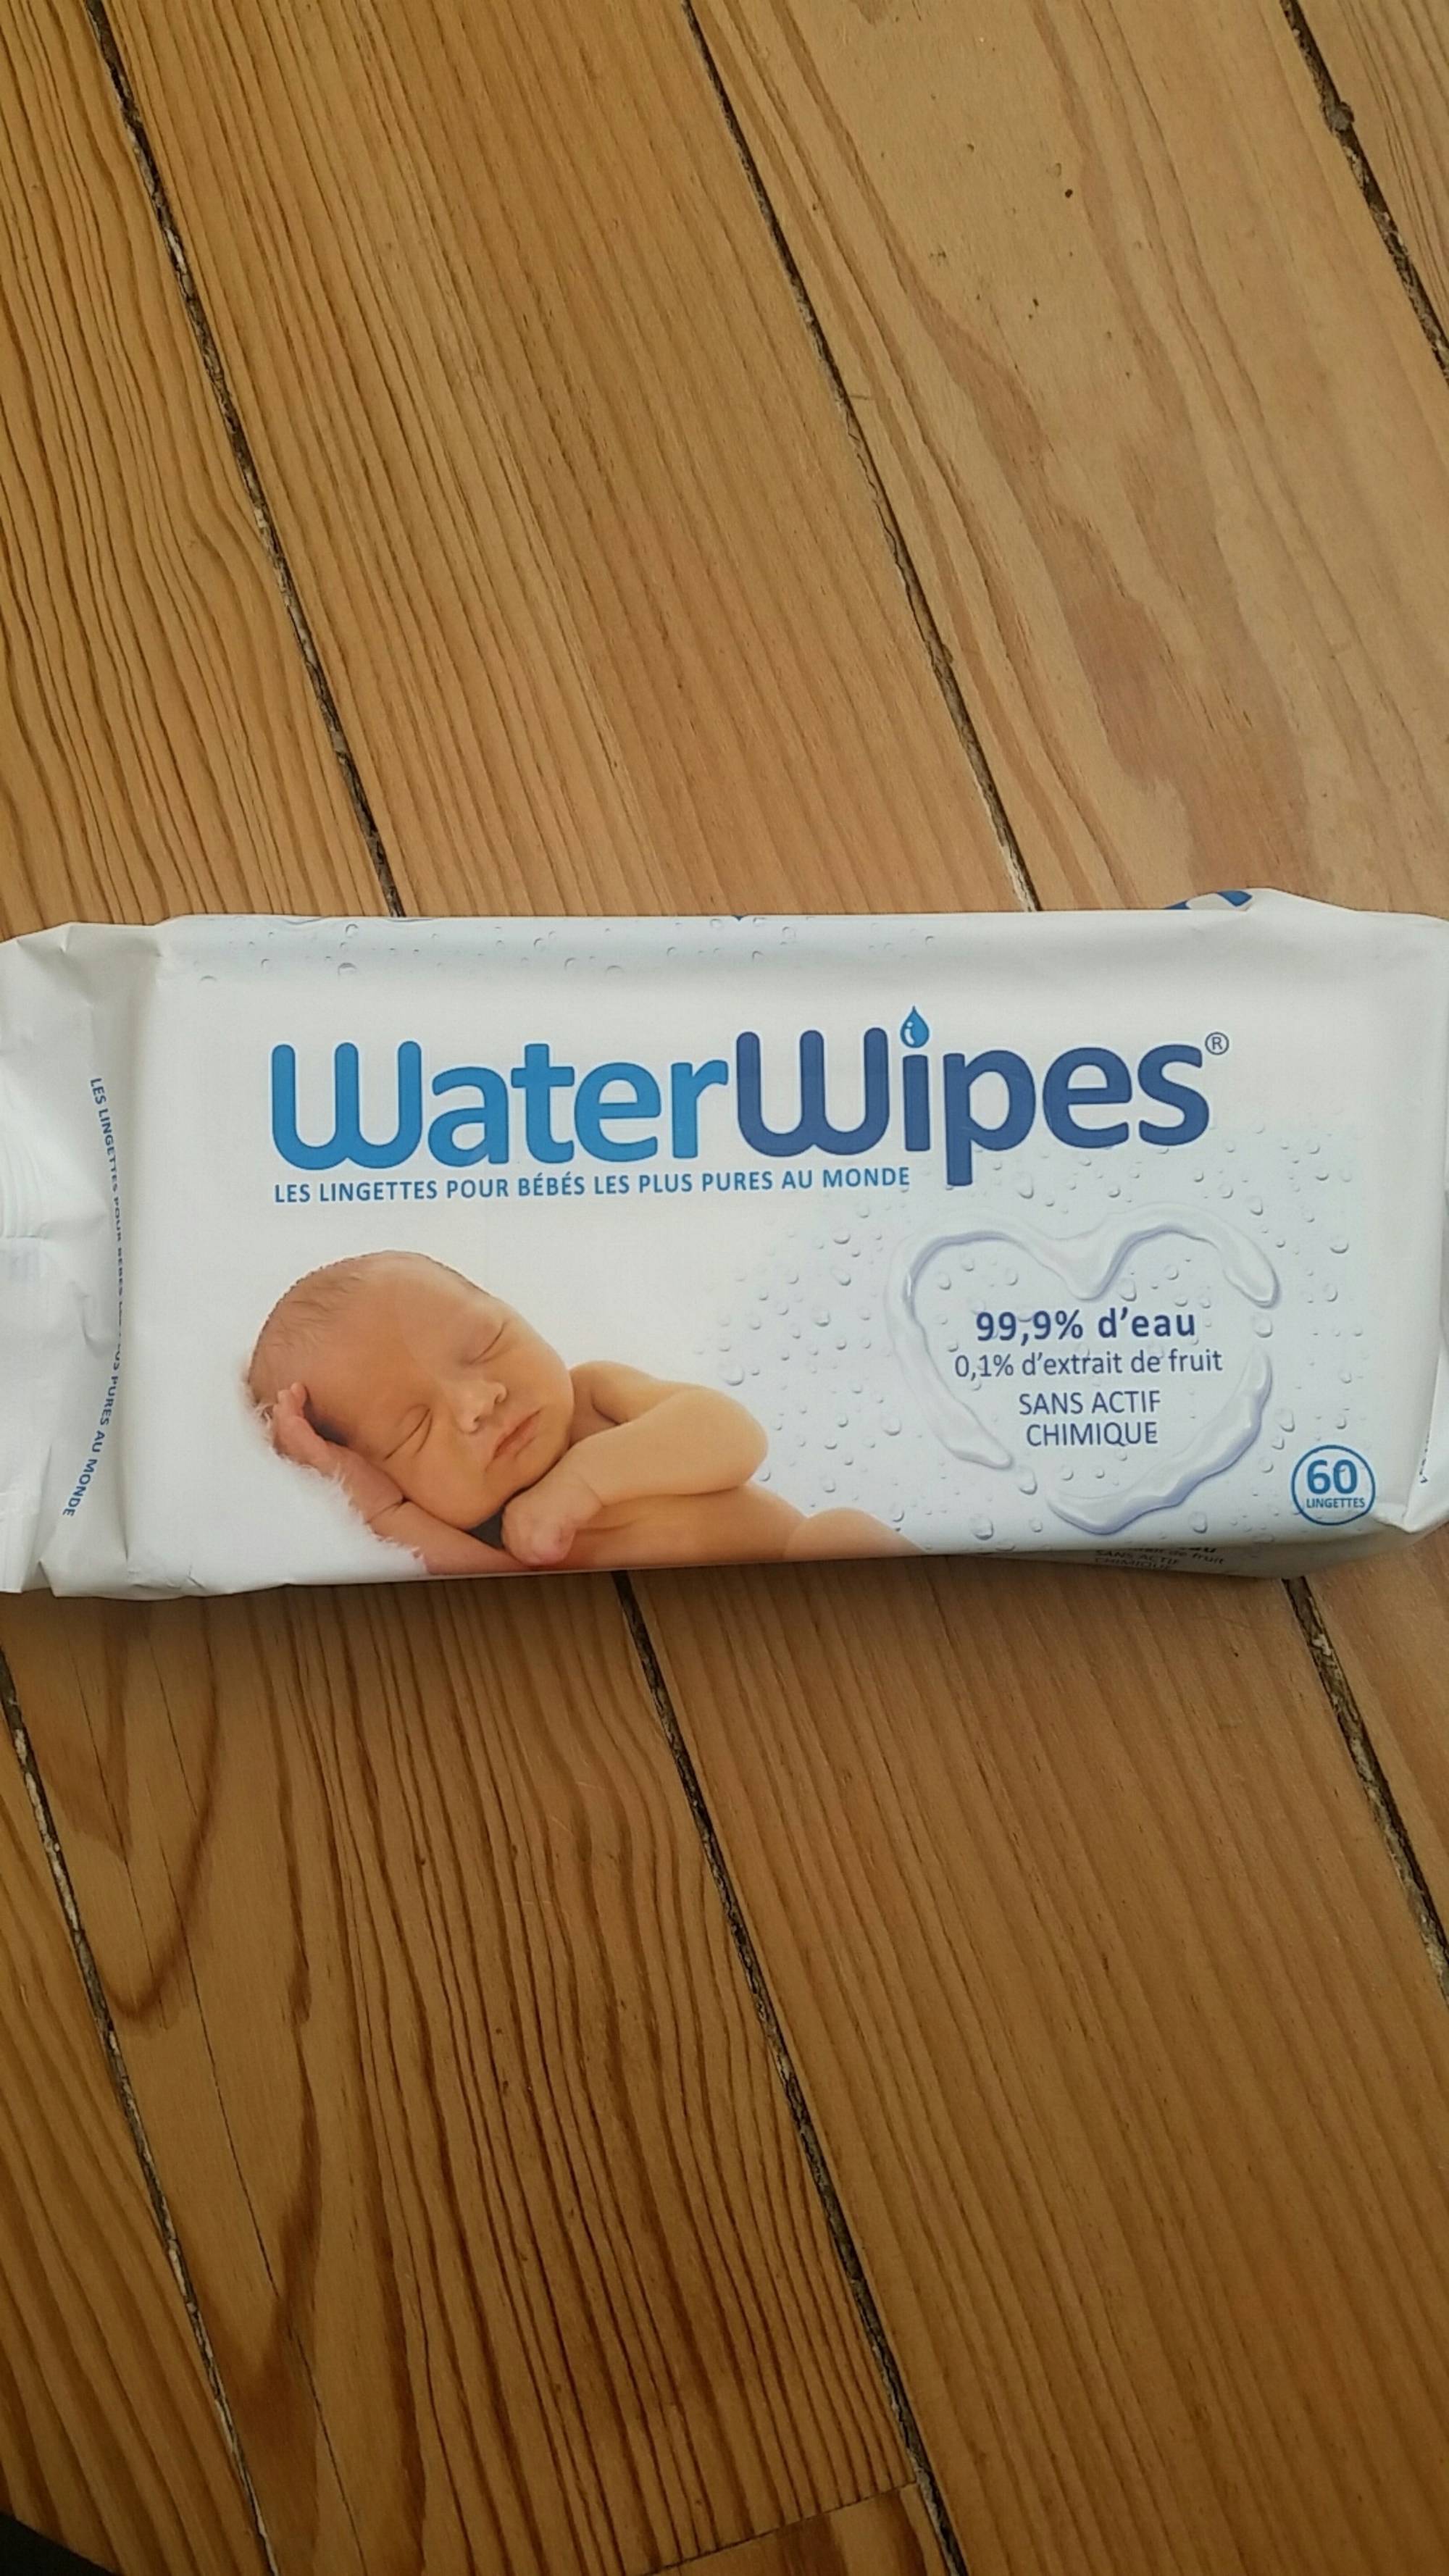 WATERWIPES - Les lingettes pour bébés les plus pures au monde